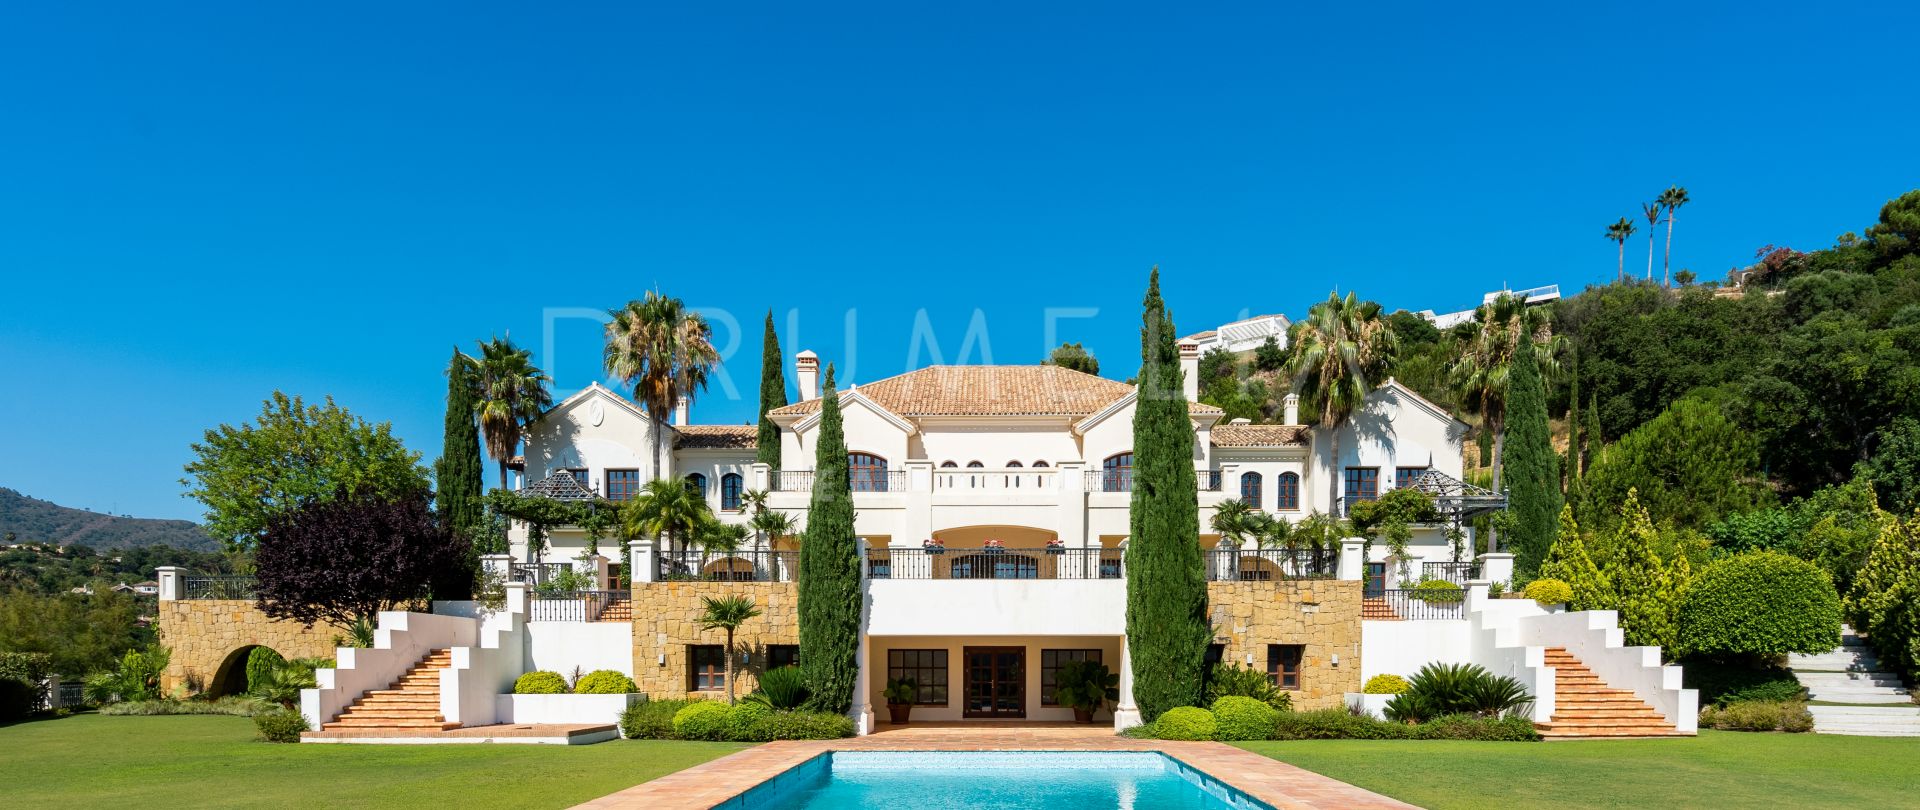 Außergewöhnliche luxuriöse Villa in La Zagaleta, Benahavis, perfekt für Unterhaltungszwecke